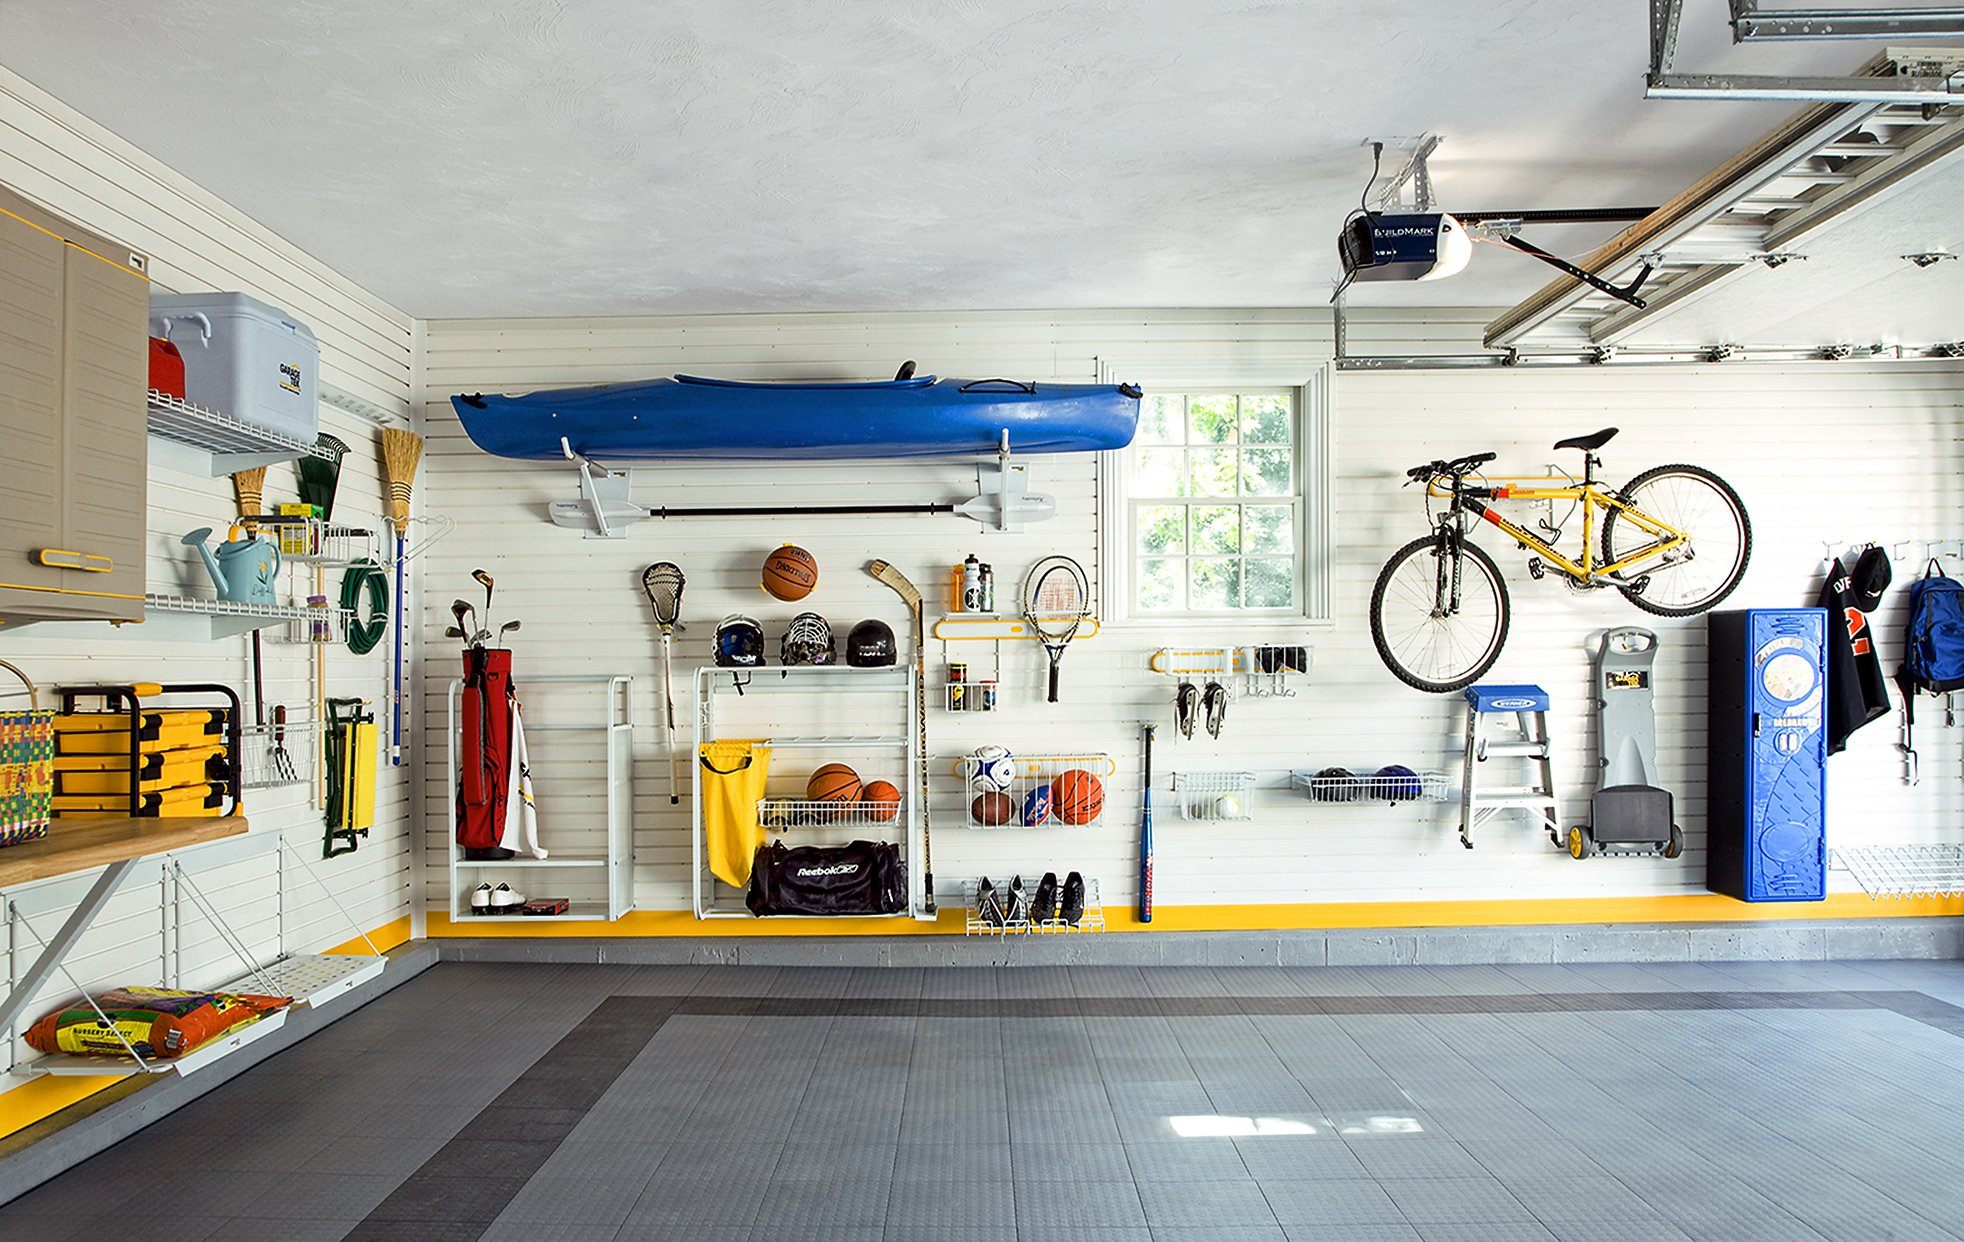 Il garage perfetto senza spendere troppo (accessori da avere in garage)  